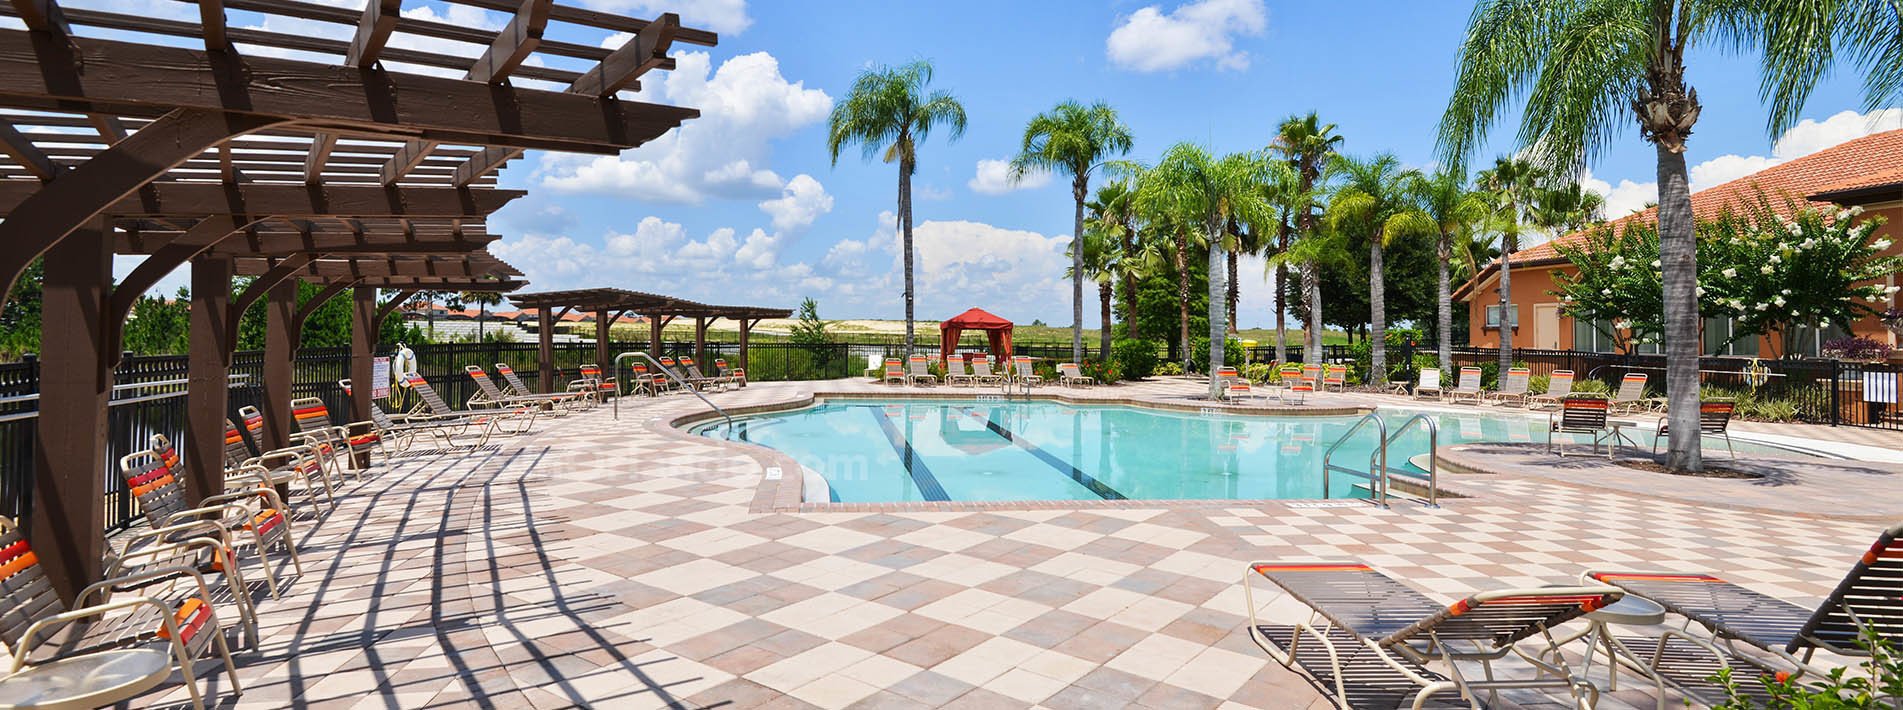 Aviana Resort Florida